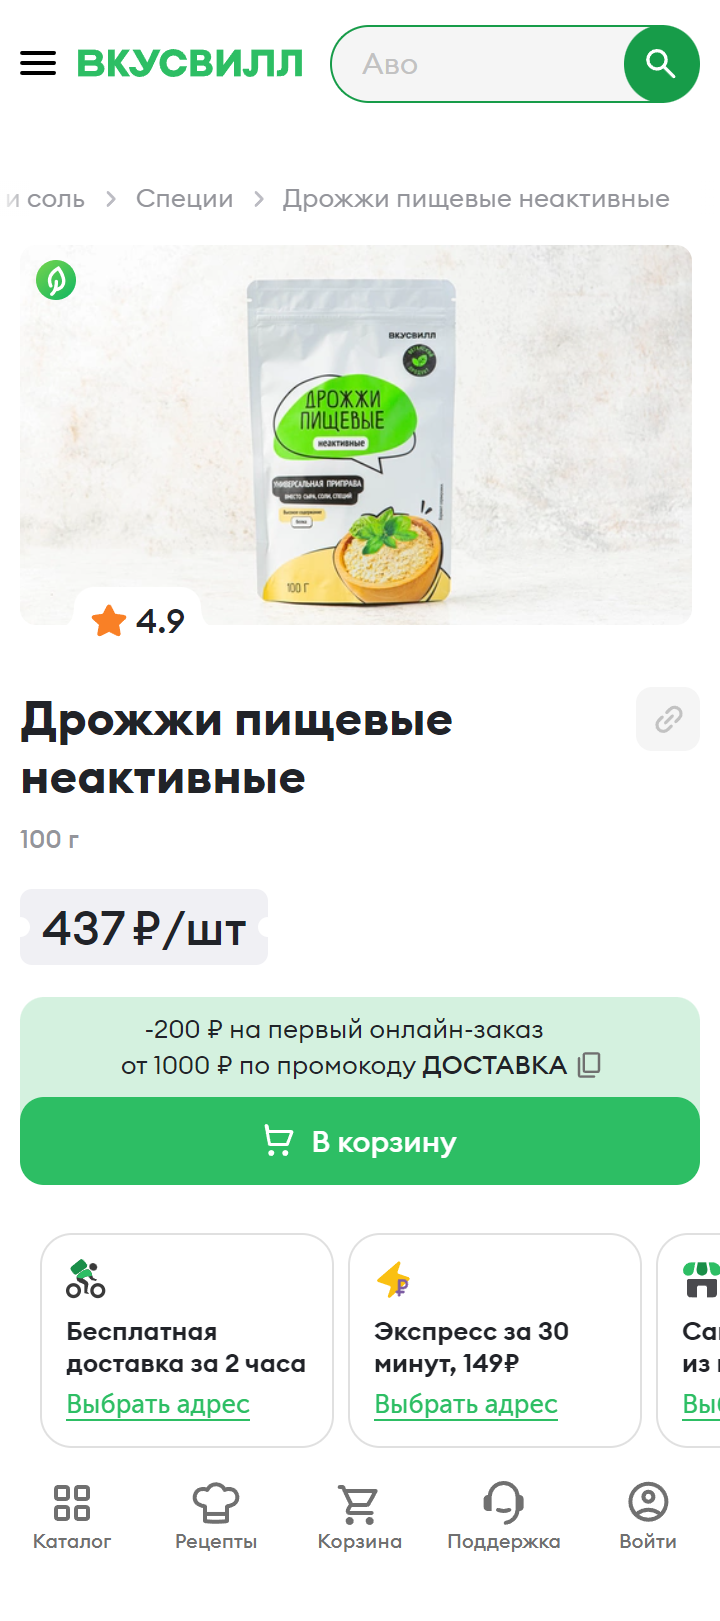 Неактивные дрожжи продаются в некоторых супермаркетах, но выше всего шансы найти их на маркетплейсах. Источник: vkusvill.ru